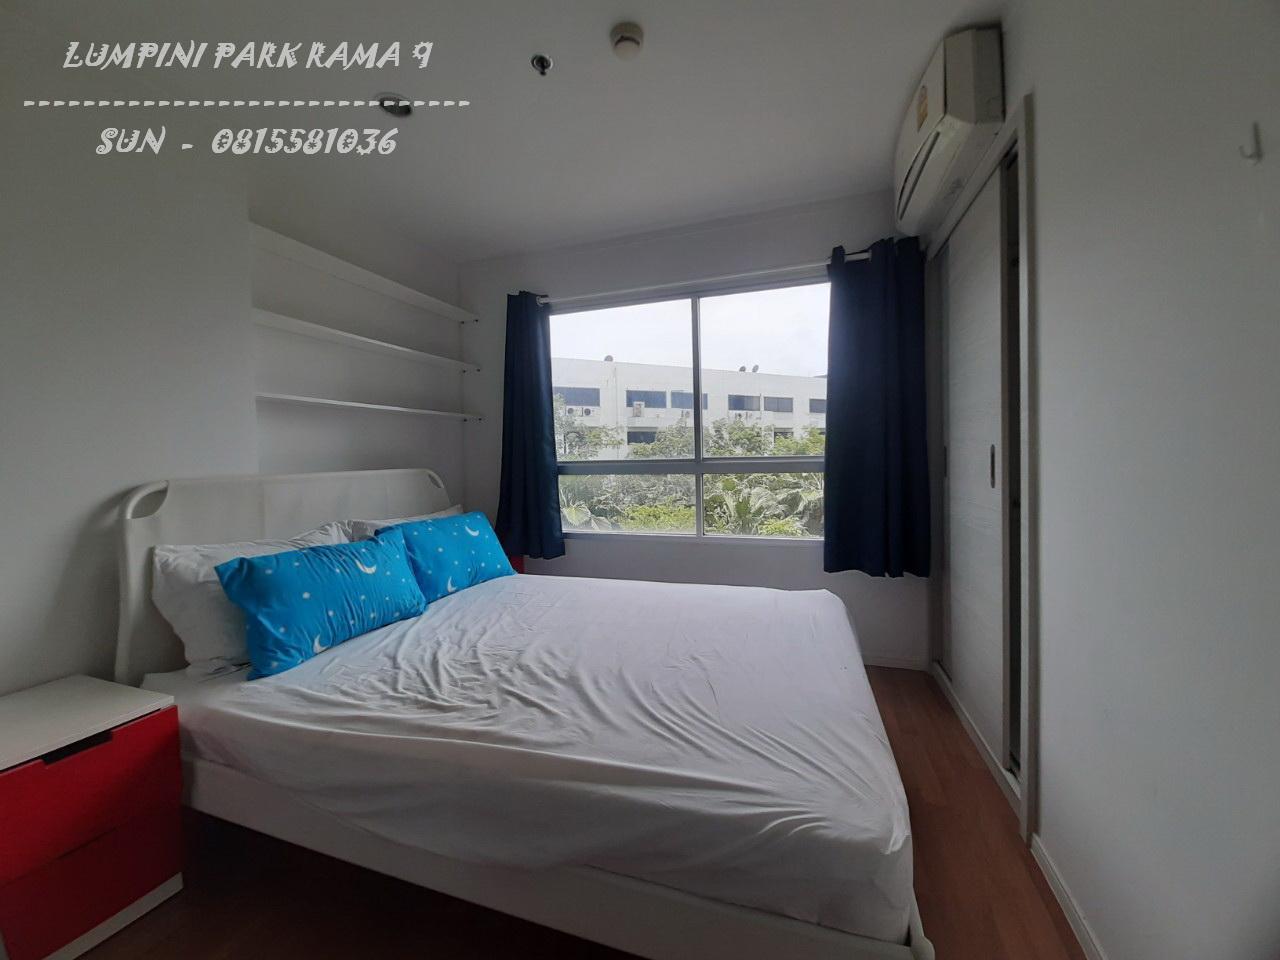 เช่าคอนโด ลุมพินี พาร์ค พระราม9- รัชดา คอนโดมิเนียม - Condo Rental Lumpini Park Rama9 - Ratchada condominium - 1267350